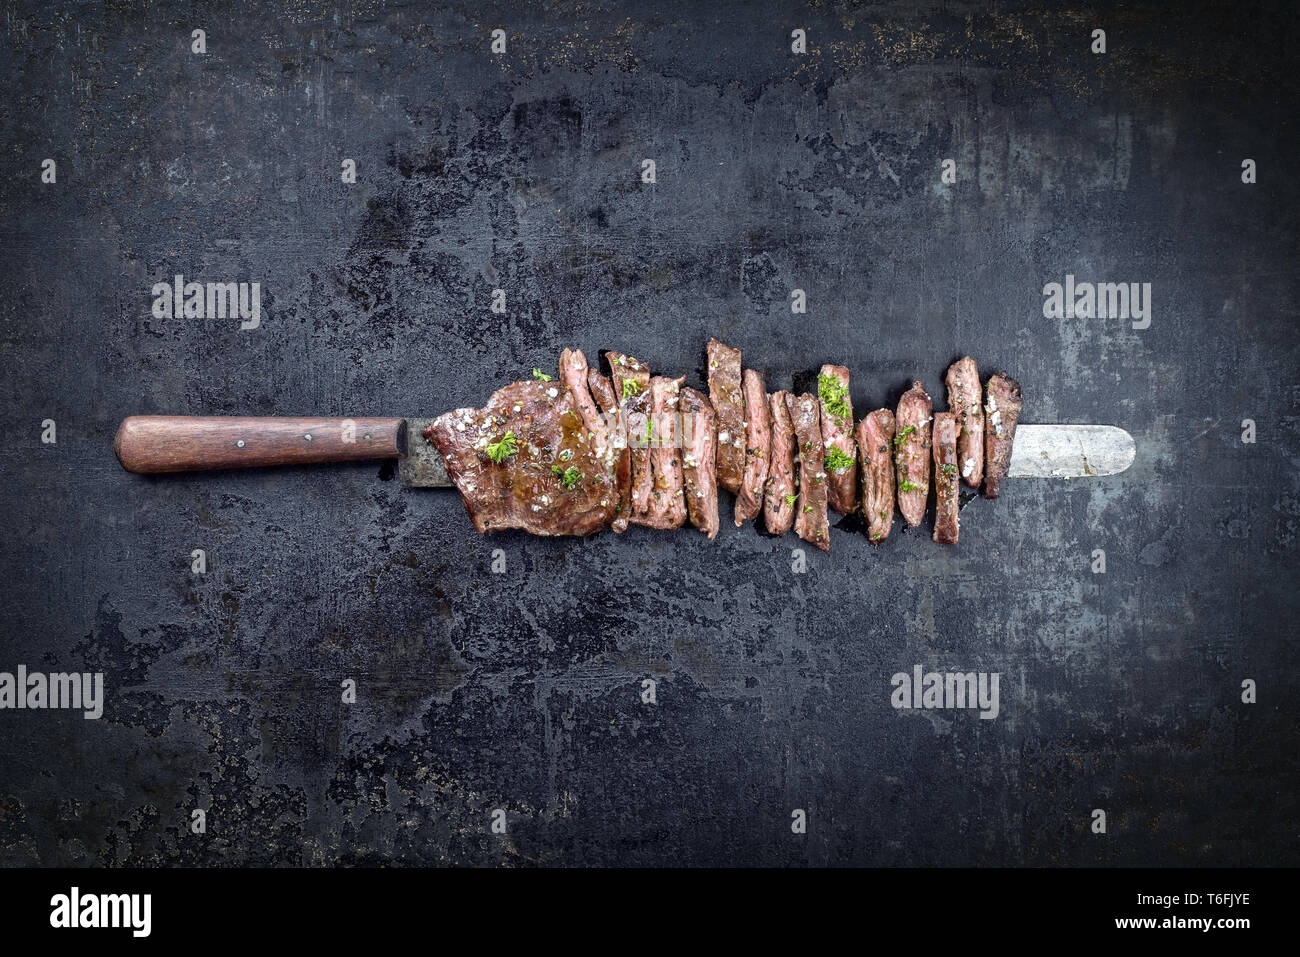 Traditionelle Grill skirt Steak in Scheiben geschnitten als Close-up auf ein Messer mit Platz kopieren Stockfoto